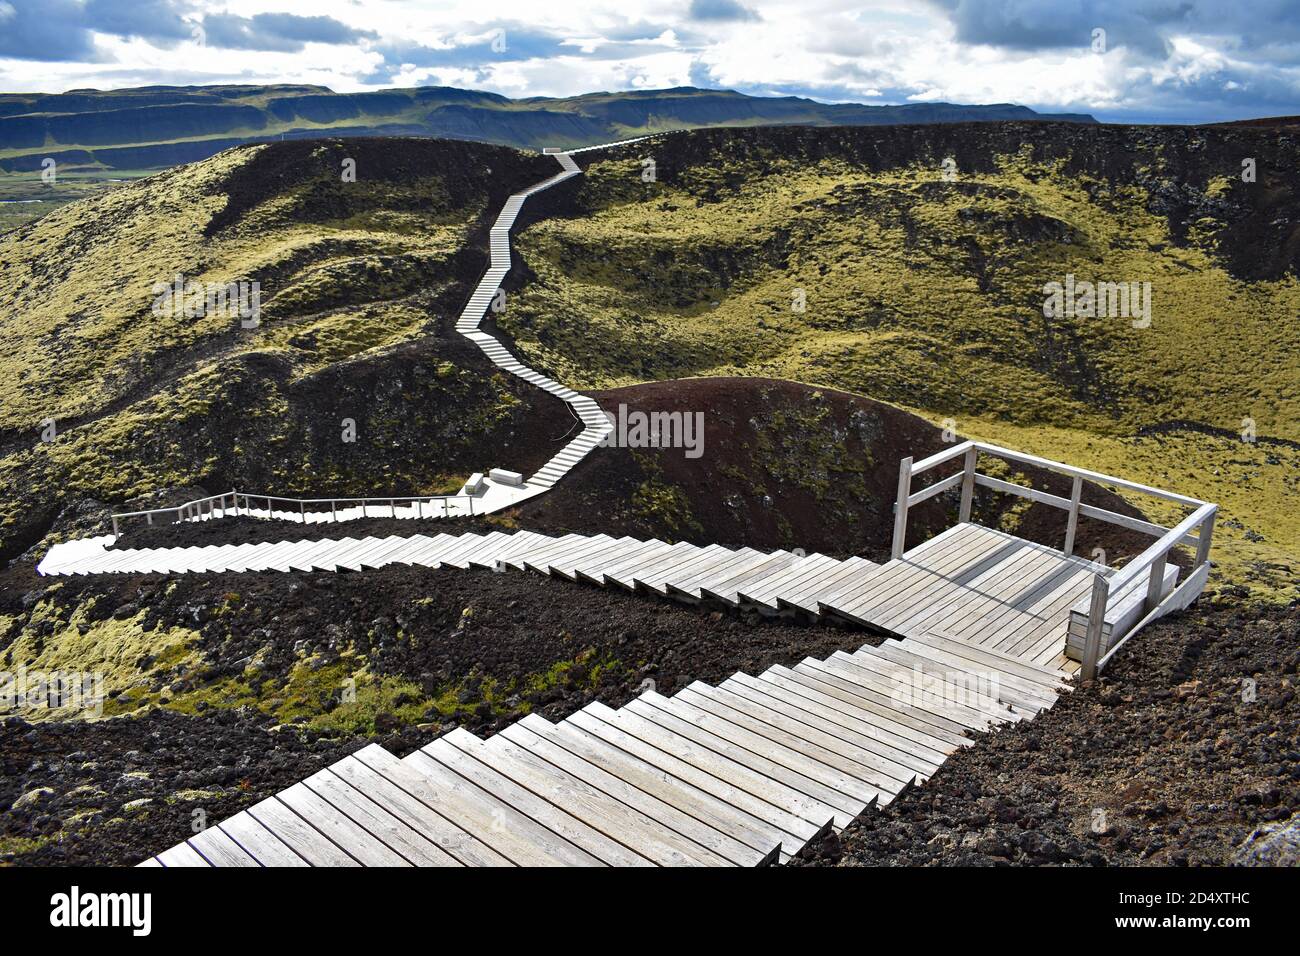 Una passerella in legno scende intorno al bordo del Cratere del Vulcano Grabrok nella Valle di Nordurardalur, in Islanda occidentale. Foto Stock